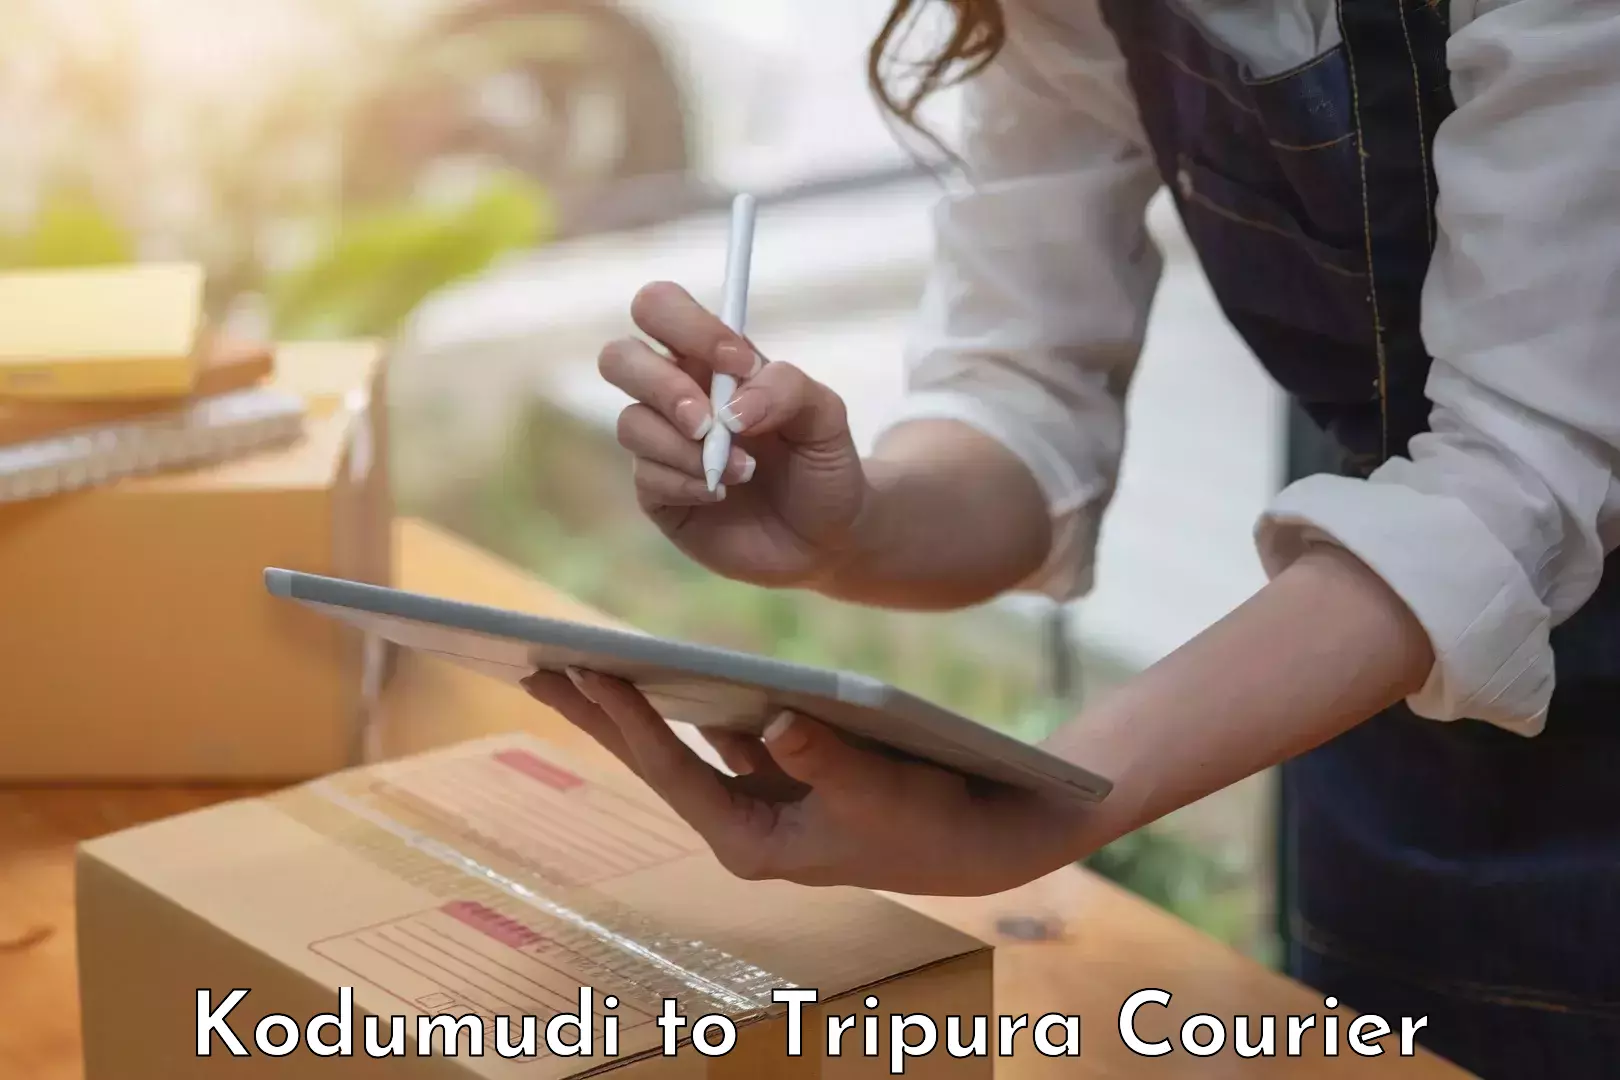 Furniture moving experts Kodumudi to Tripura